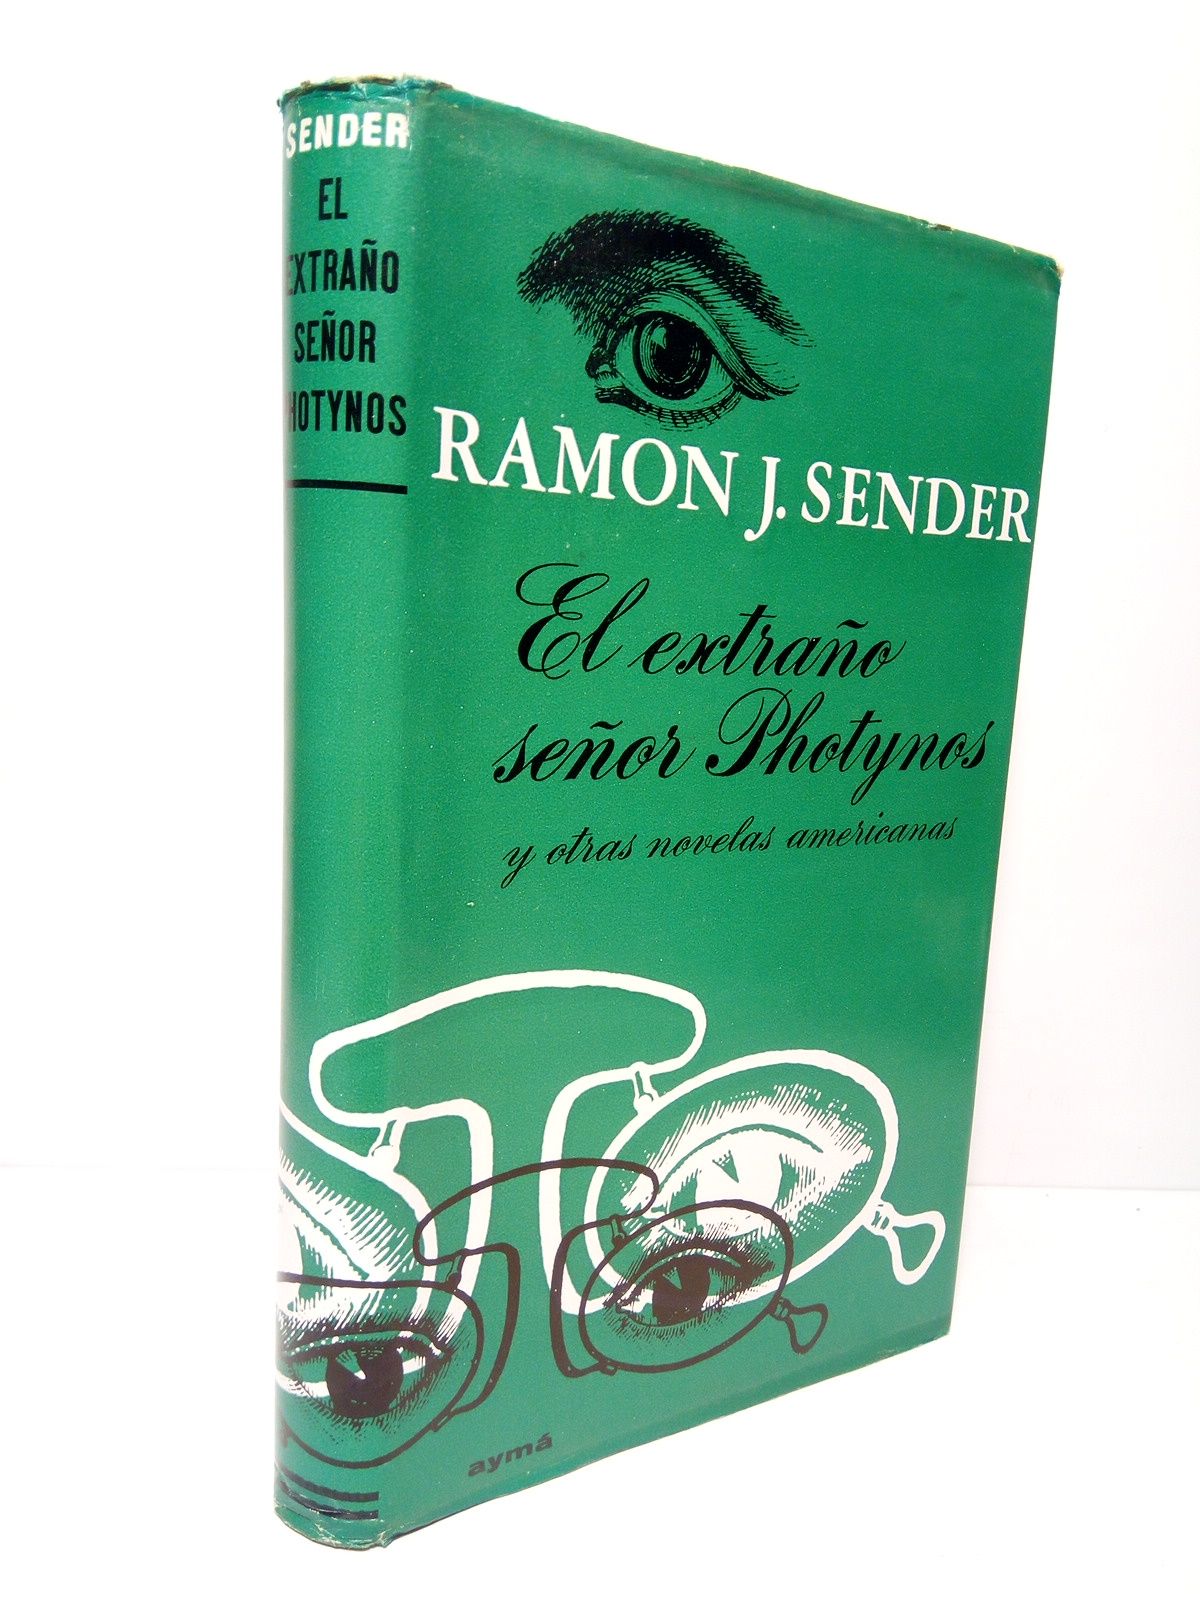 Réquiem por un campesino español': Ramón J. Sénder, al teatro - Rivas Ciudad